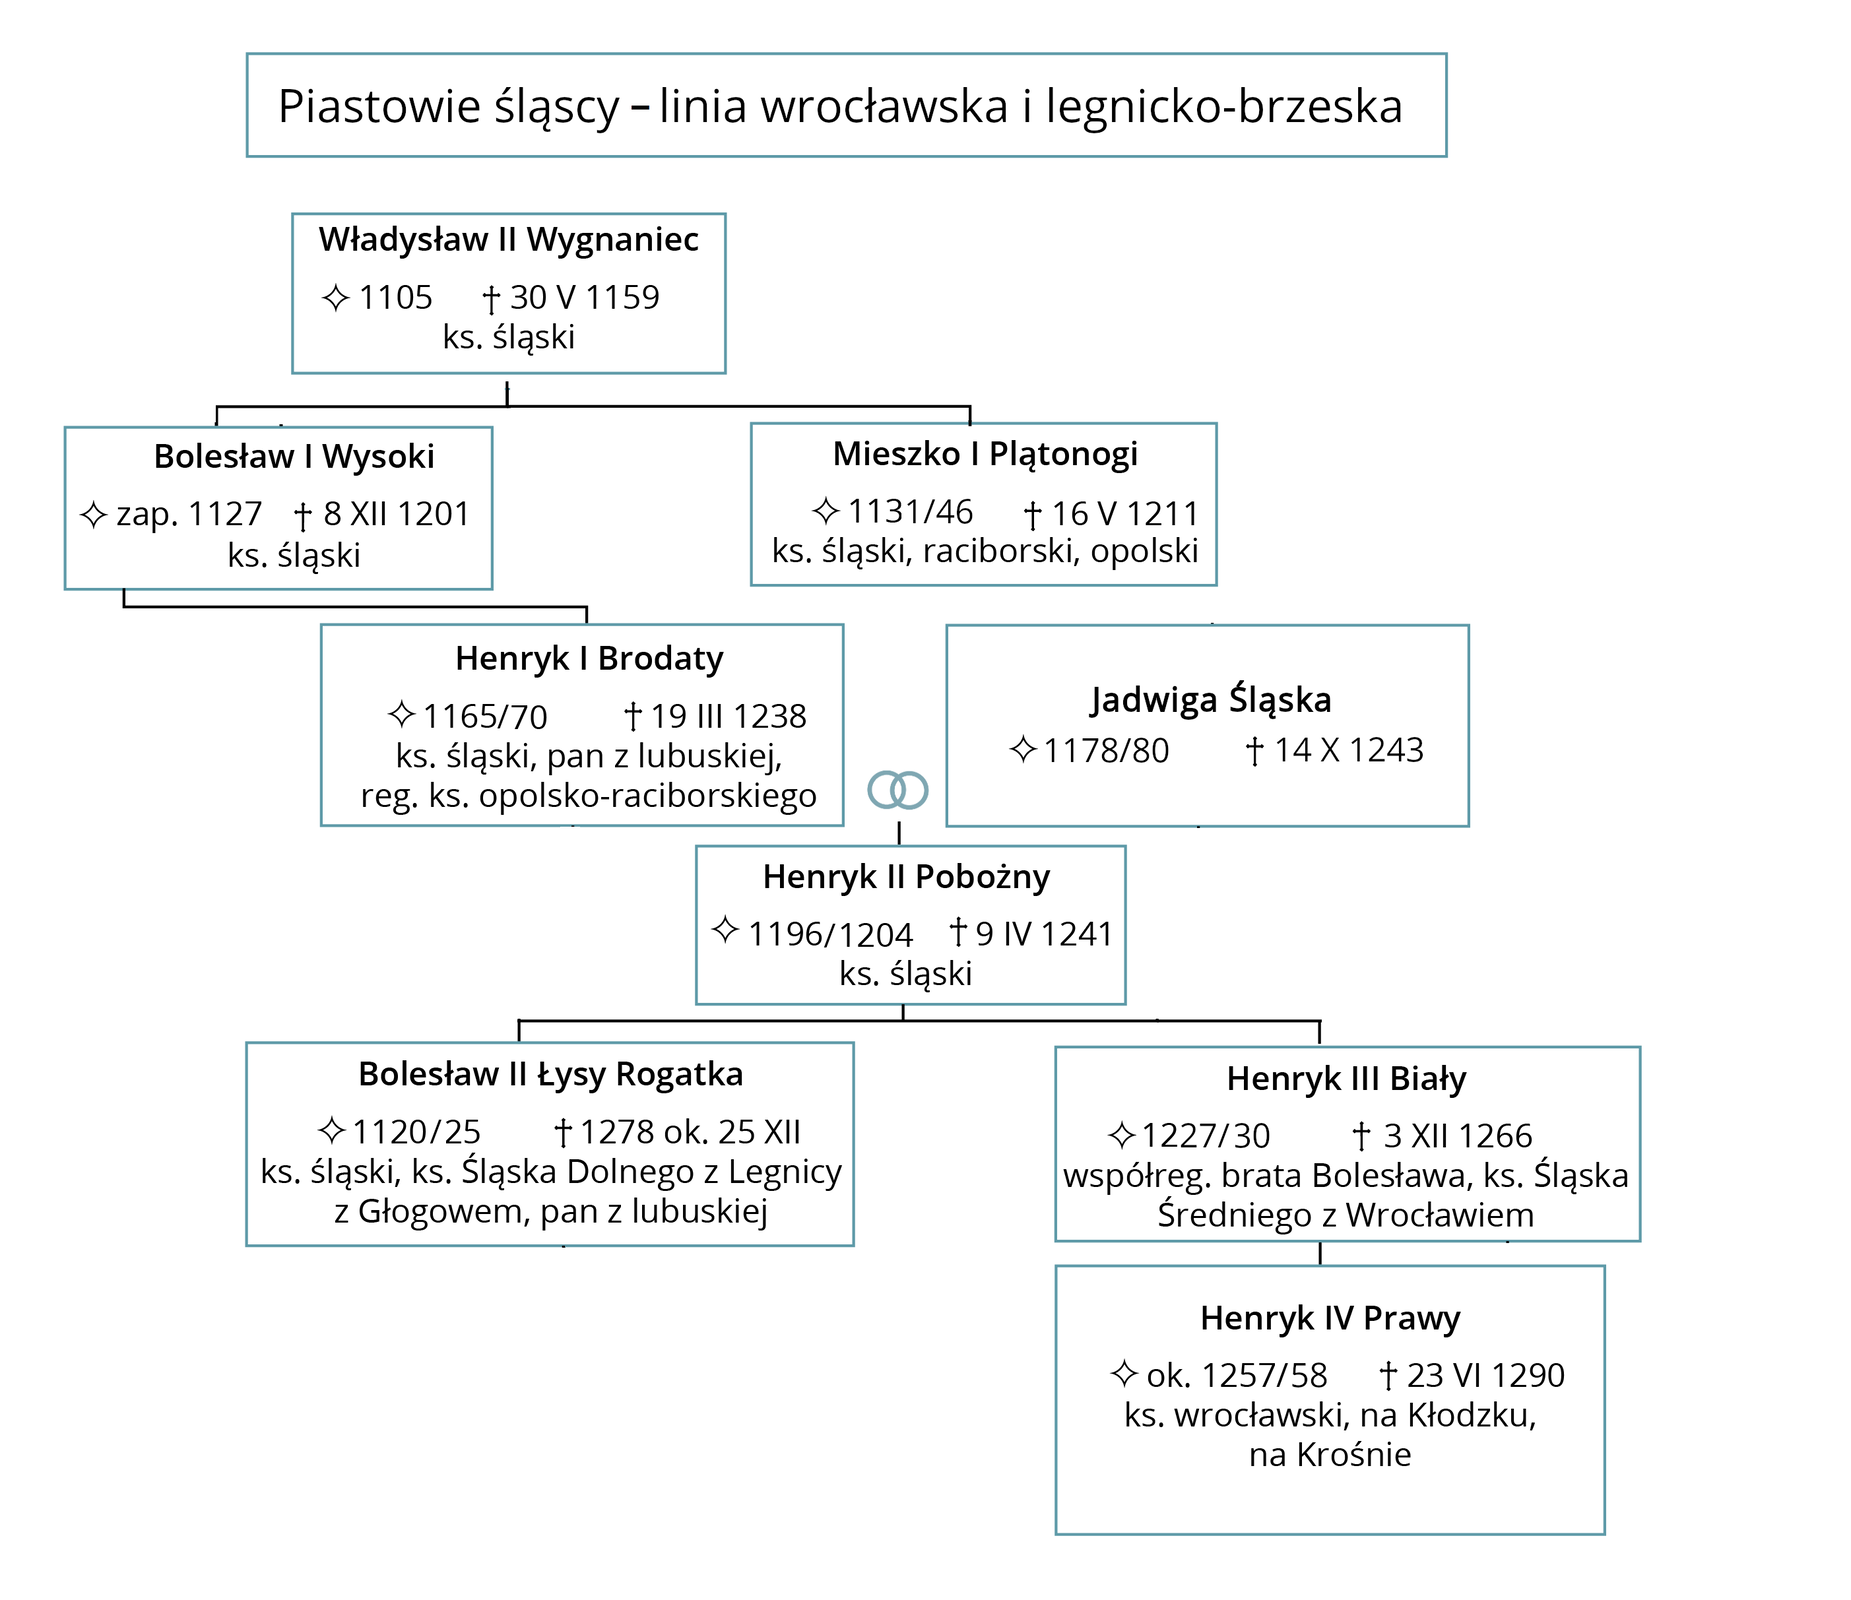 Ilustracja przedstawia drzewo gen A logiczne Piastów Śląskich – linia wrocławska i legnicka – brzeska.  1. Władysław Drugi Wygnaniec urodzony w 1105 roku, zmarł 30 maja 1159 roku, Książę śląski. Miał dwóch synów Bolesława Pierwszego Wysokiego i Mieszka Pierwszego Plątonogiego. 2. Mieszko Pierwszy Plątonogi urodzony w 1131/46 roku, zmarł 16 maja 1211 roku, Książę śląski, raciborski, opolski. 3.  Bolesław Pierwszy Wysoki urodzony w 1127 roku, zmarł 8 grudnia 1201 roku, Książę śląski. Miał syna Henryka Pierwszego Brodatego. 4. Henryk Pierwszy Brodaty urodzony w 1165/70 roku, zmarł 19 marca 1238 roku, Książę śląski, pan z lubuskiej, reg. Książę opolsko‑raciborskiego. Poślubił Jadwigę Śląską urodzoną w 1178/80 roku, zmarłą 14 października 1243 roku. Dochowali się syna, Henryka Drugiego Pobożnego.  5. Henryk Drugi Pobożny urodzony w 1196/1204 roku, zmarł 9 kwietnia 1241 roku, ksiądz śląski. Miał dwóch synów: Bolesława Drugiego Łysego Rogatka i Henryka Trzeciego Białego. 6. Bolesław Drugi Łysy Rogatek urodzony w 1120/25 roku, zmarł 25 grudnia 1278 roku. Książę śląski, Książę Śląska Dolnego z Legnicy z Głogowem, pan z lubuskiej.  7. Henryk Trzeci Biały, urodzony w 1227/30 roku, zmarły 3 grudnia 1266 roku, współreg. brata Bolesława, Książę Śląska Średniego z Worcławiem. Miał syna Henryka Czwartego Prawego.  8. Henryk Czwarty Prawy urodzony w 1257/58, zmarły 23 czerwca 1290 roku, Książę wrocławski, na Kłodzku, na Krośnie. 